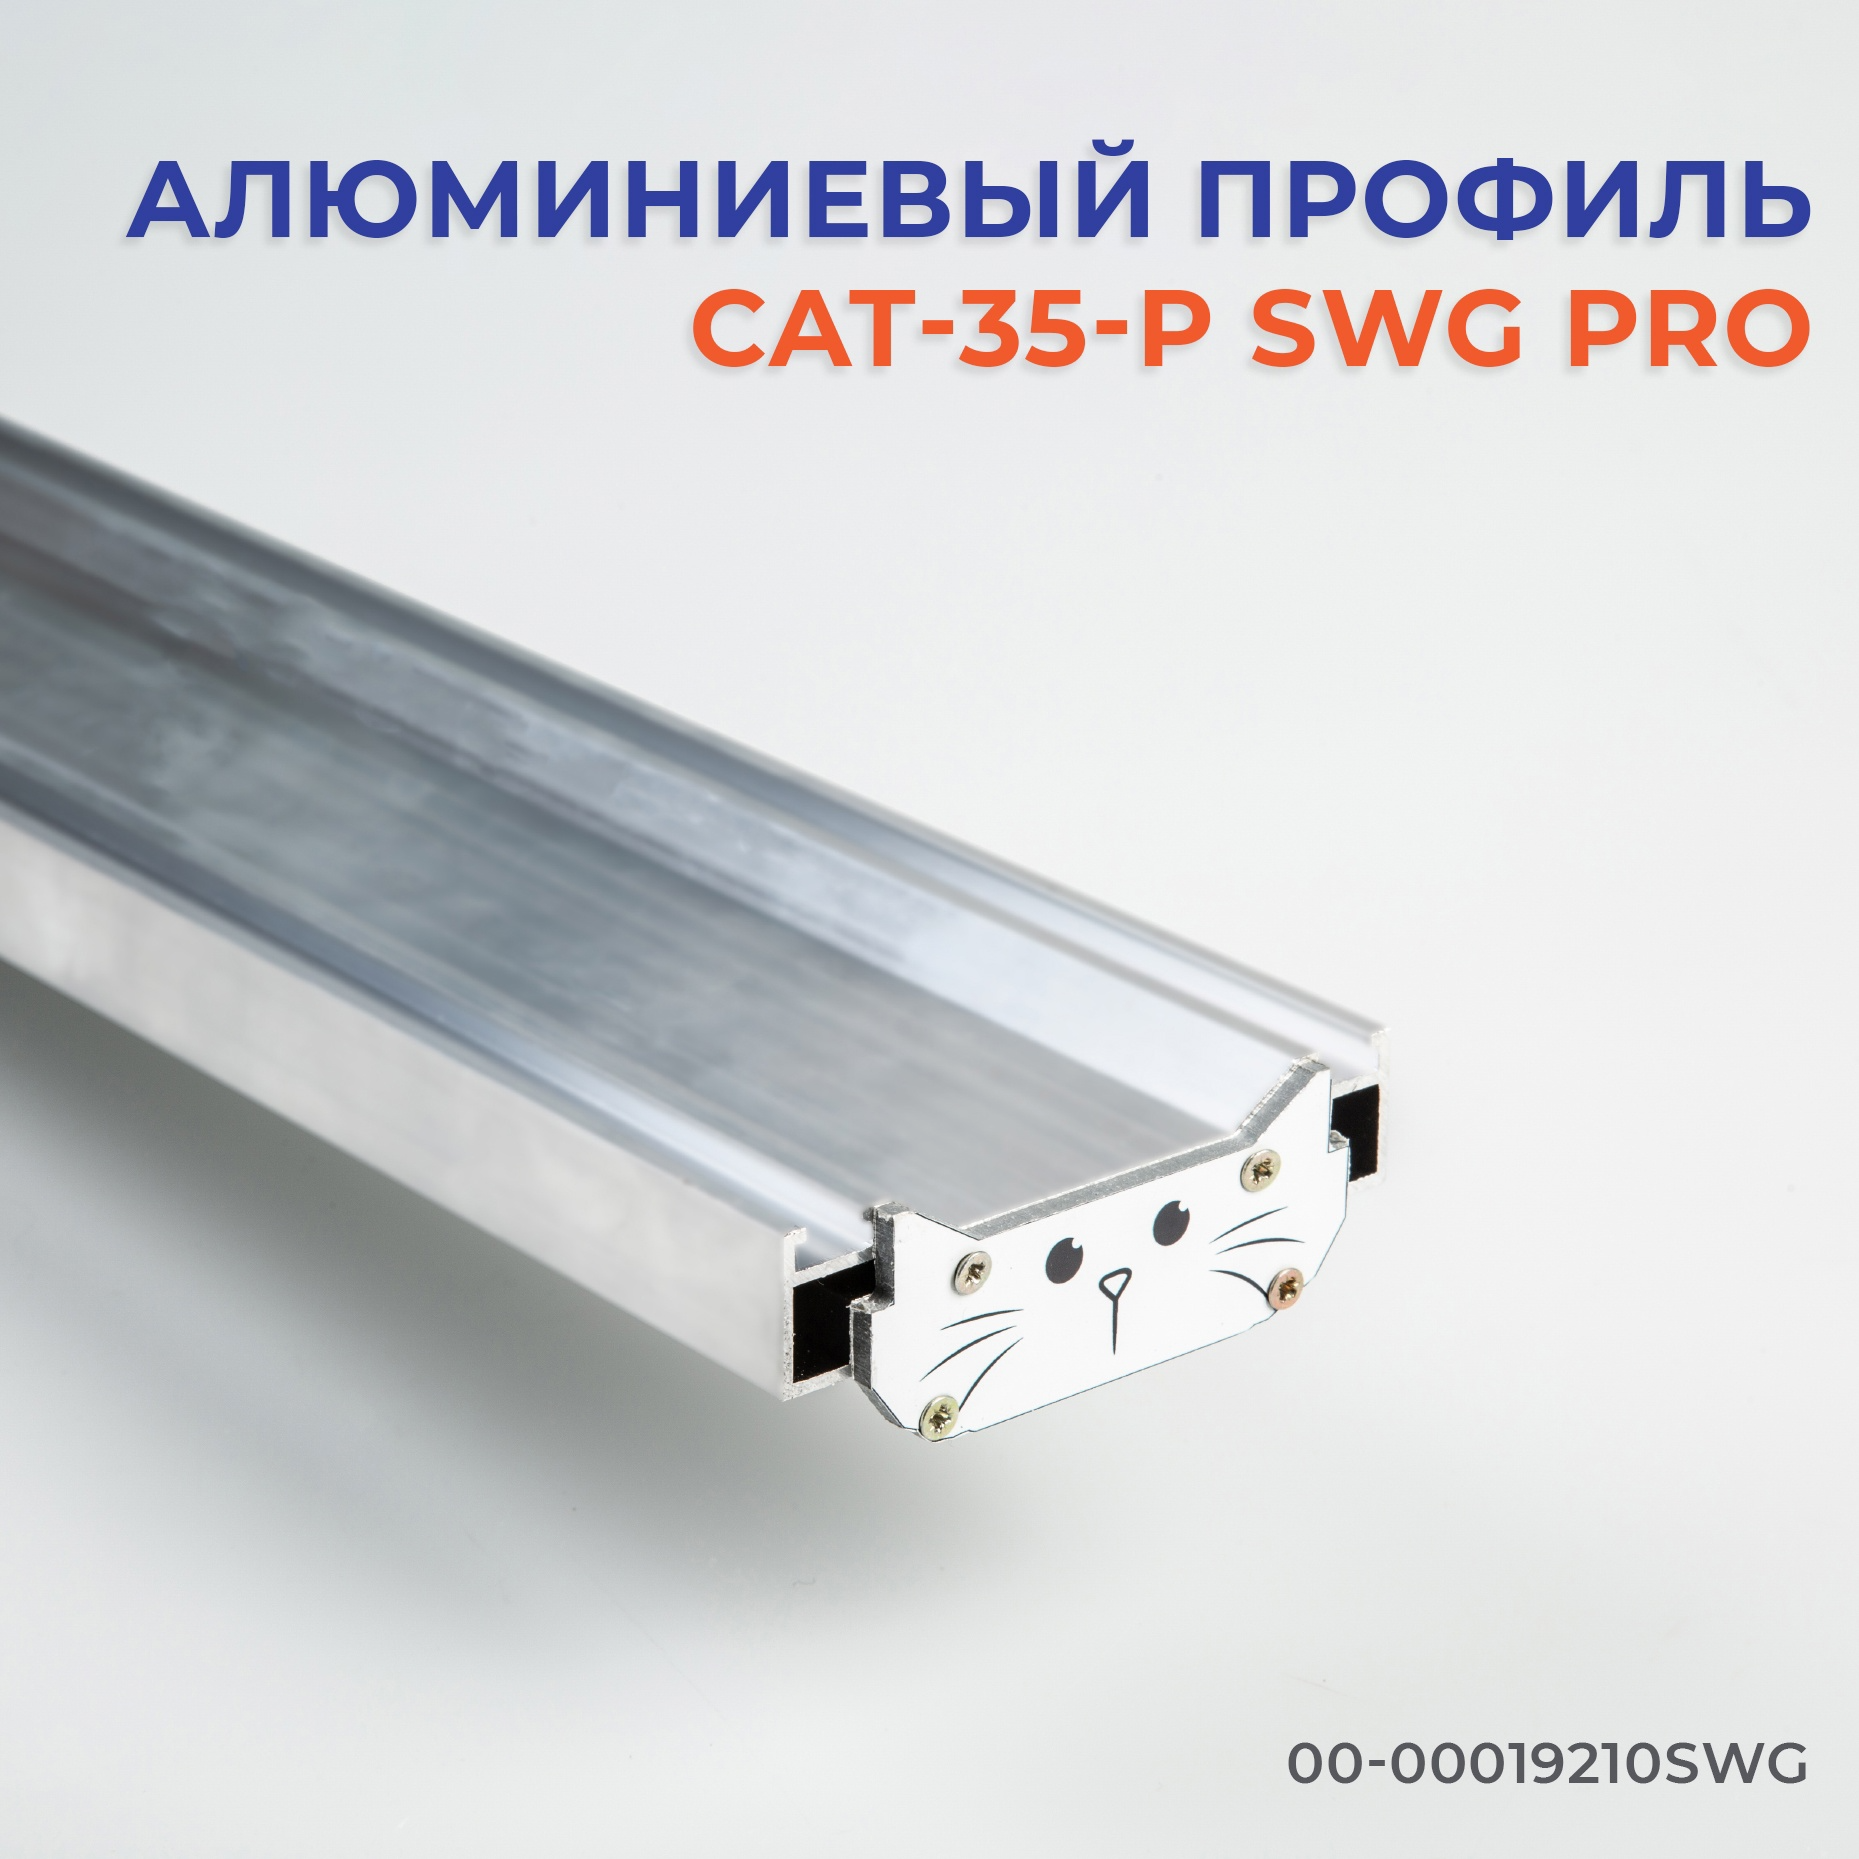 Новинка! Профиль CAT-35-P SWG Pro